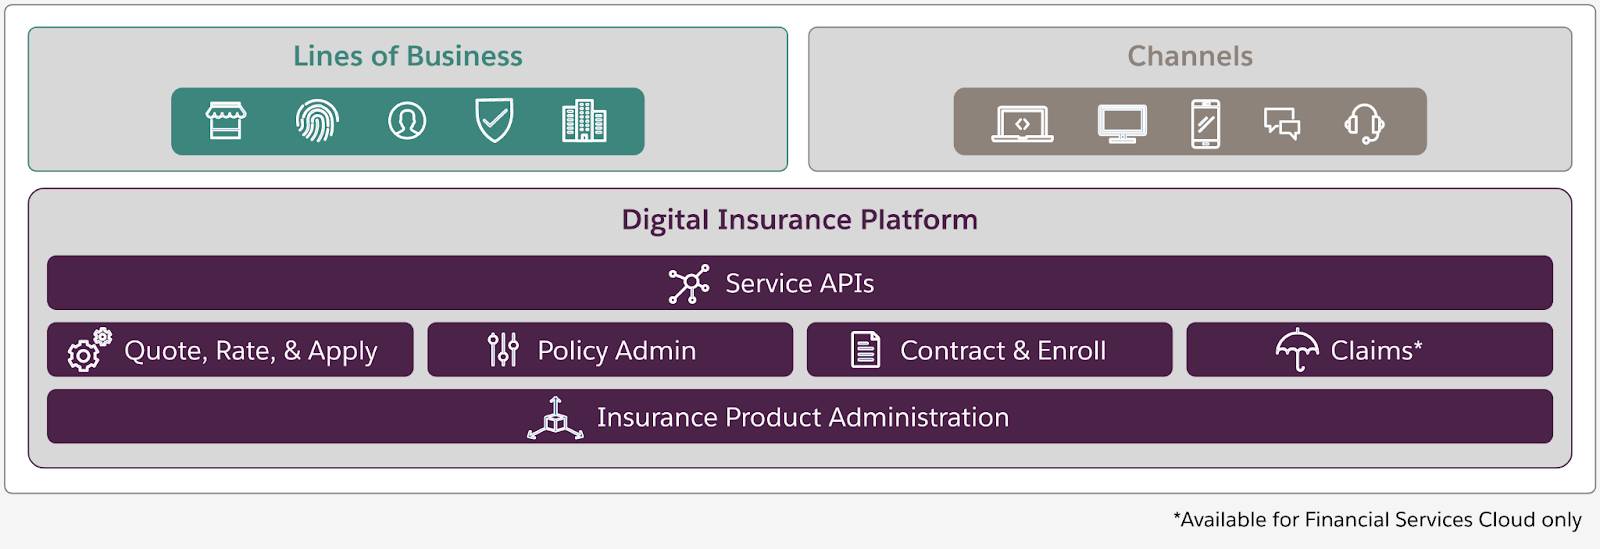 デジタル保険プラットフォームでは多様な保険種目がサポートされ、オムニチャネルサービスが提供される。